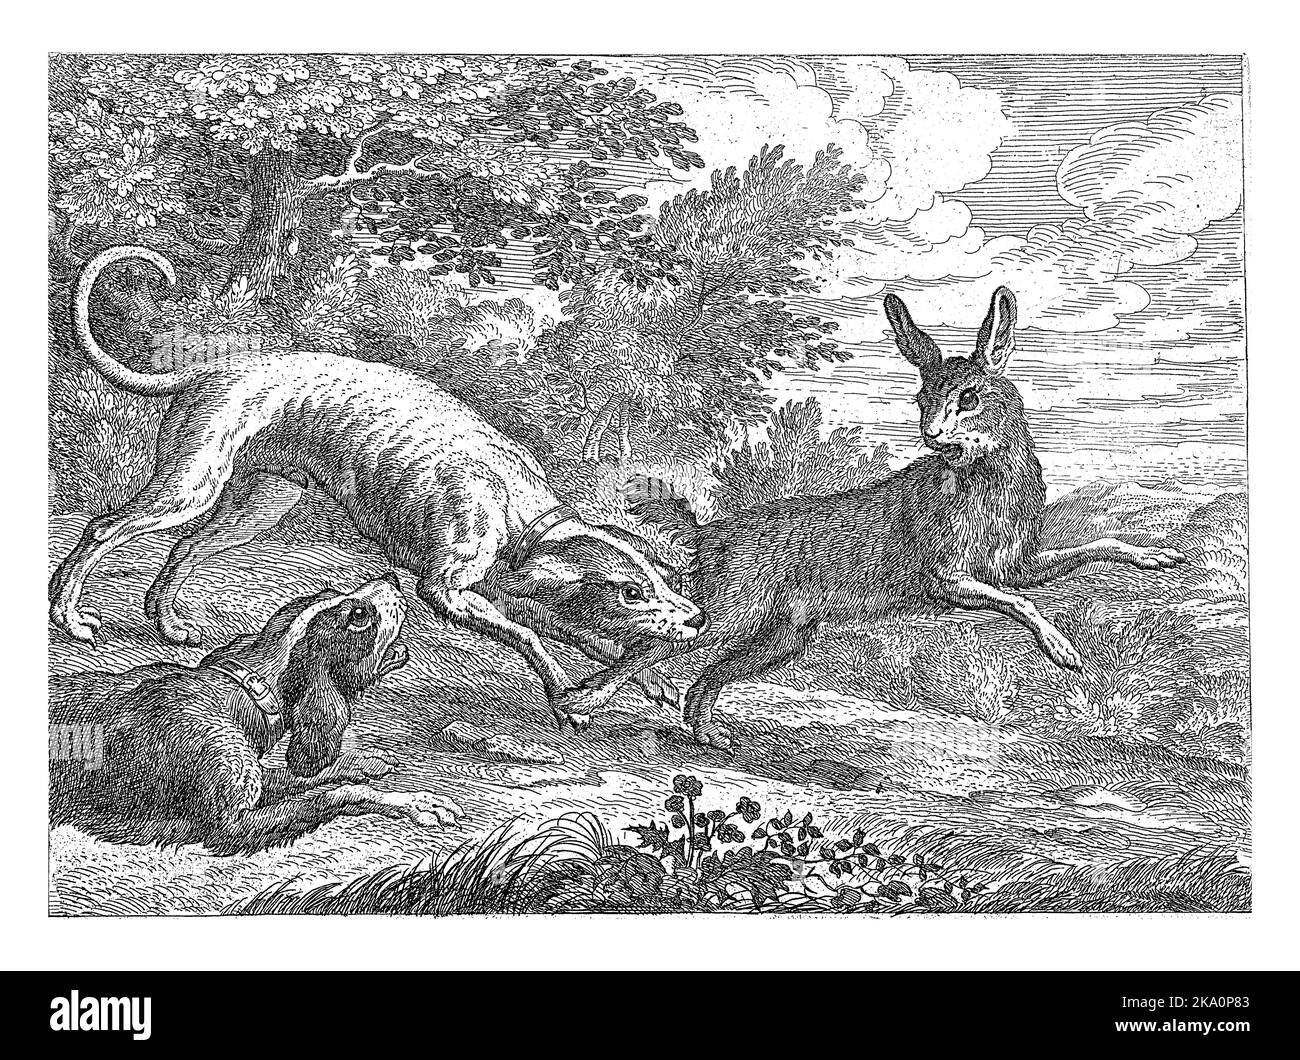 Deux chiens chassent un lièvre. Cet imprimé fait partie d'une série de dix tirages avec différents animaux. Banque D'Images